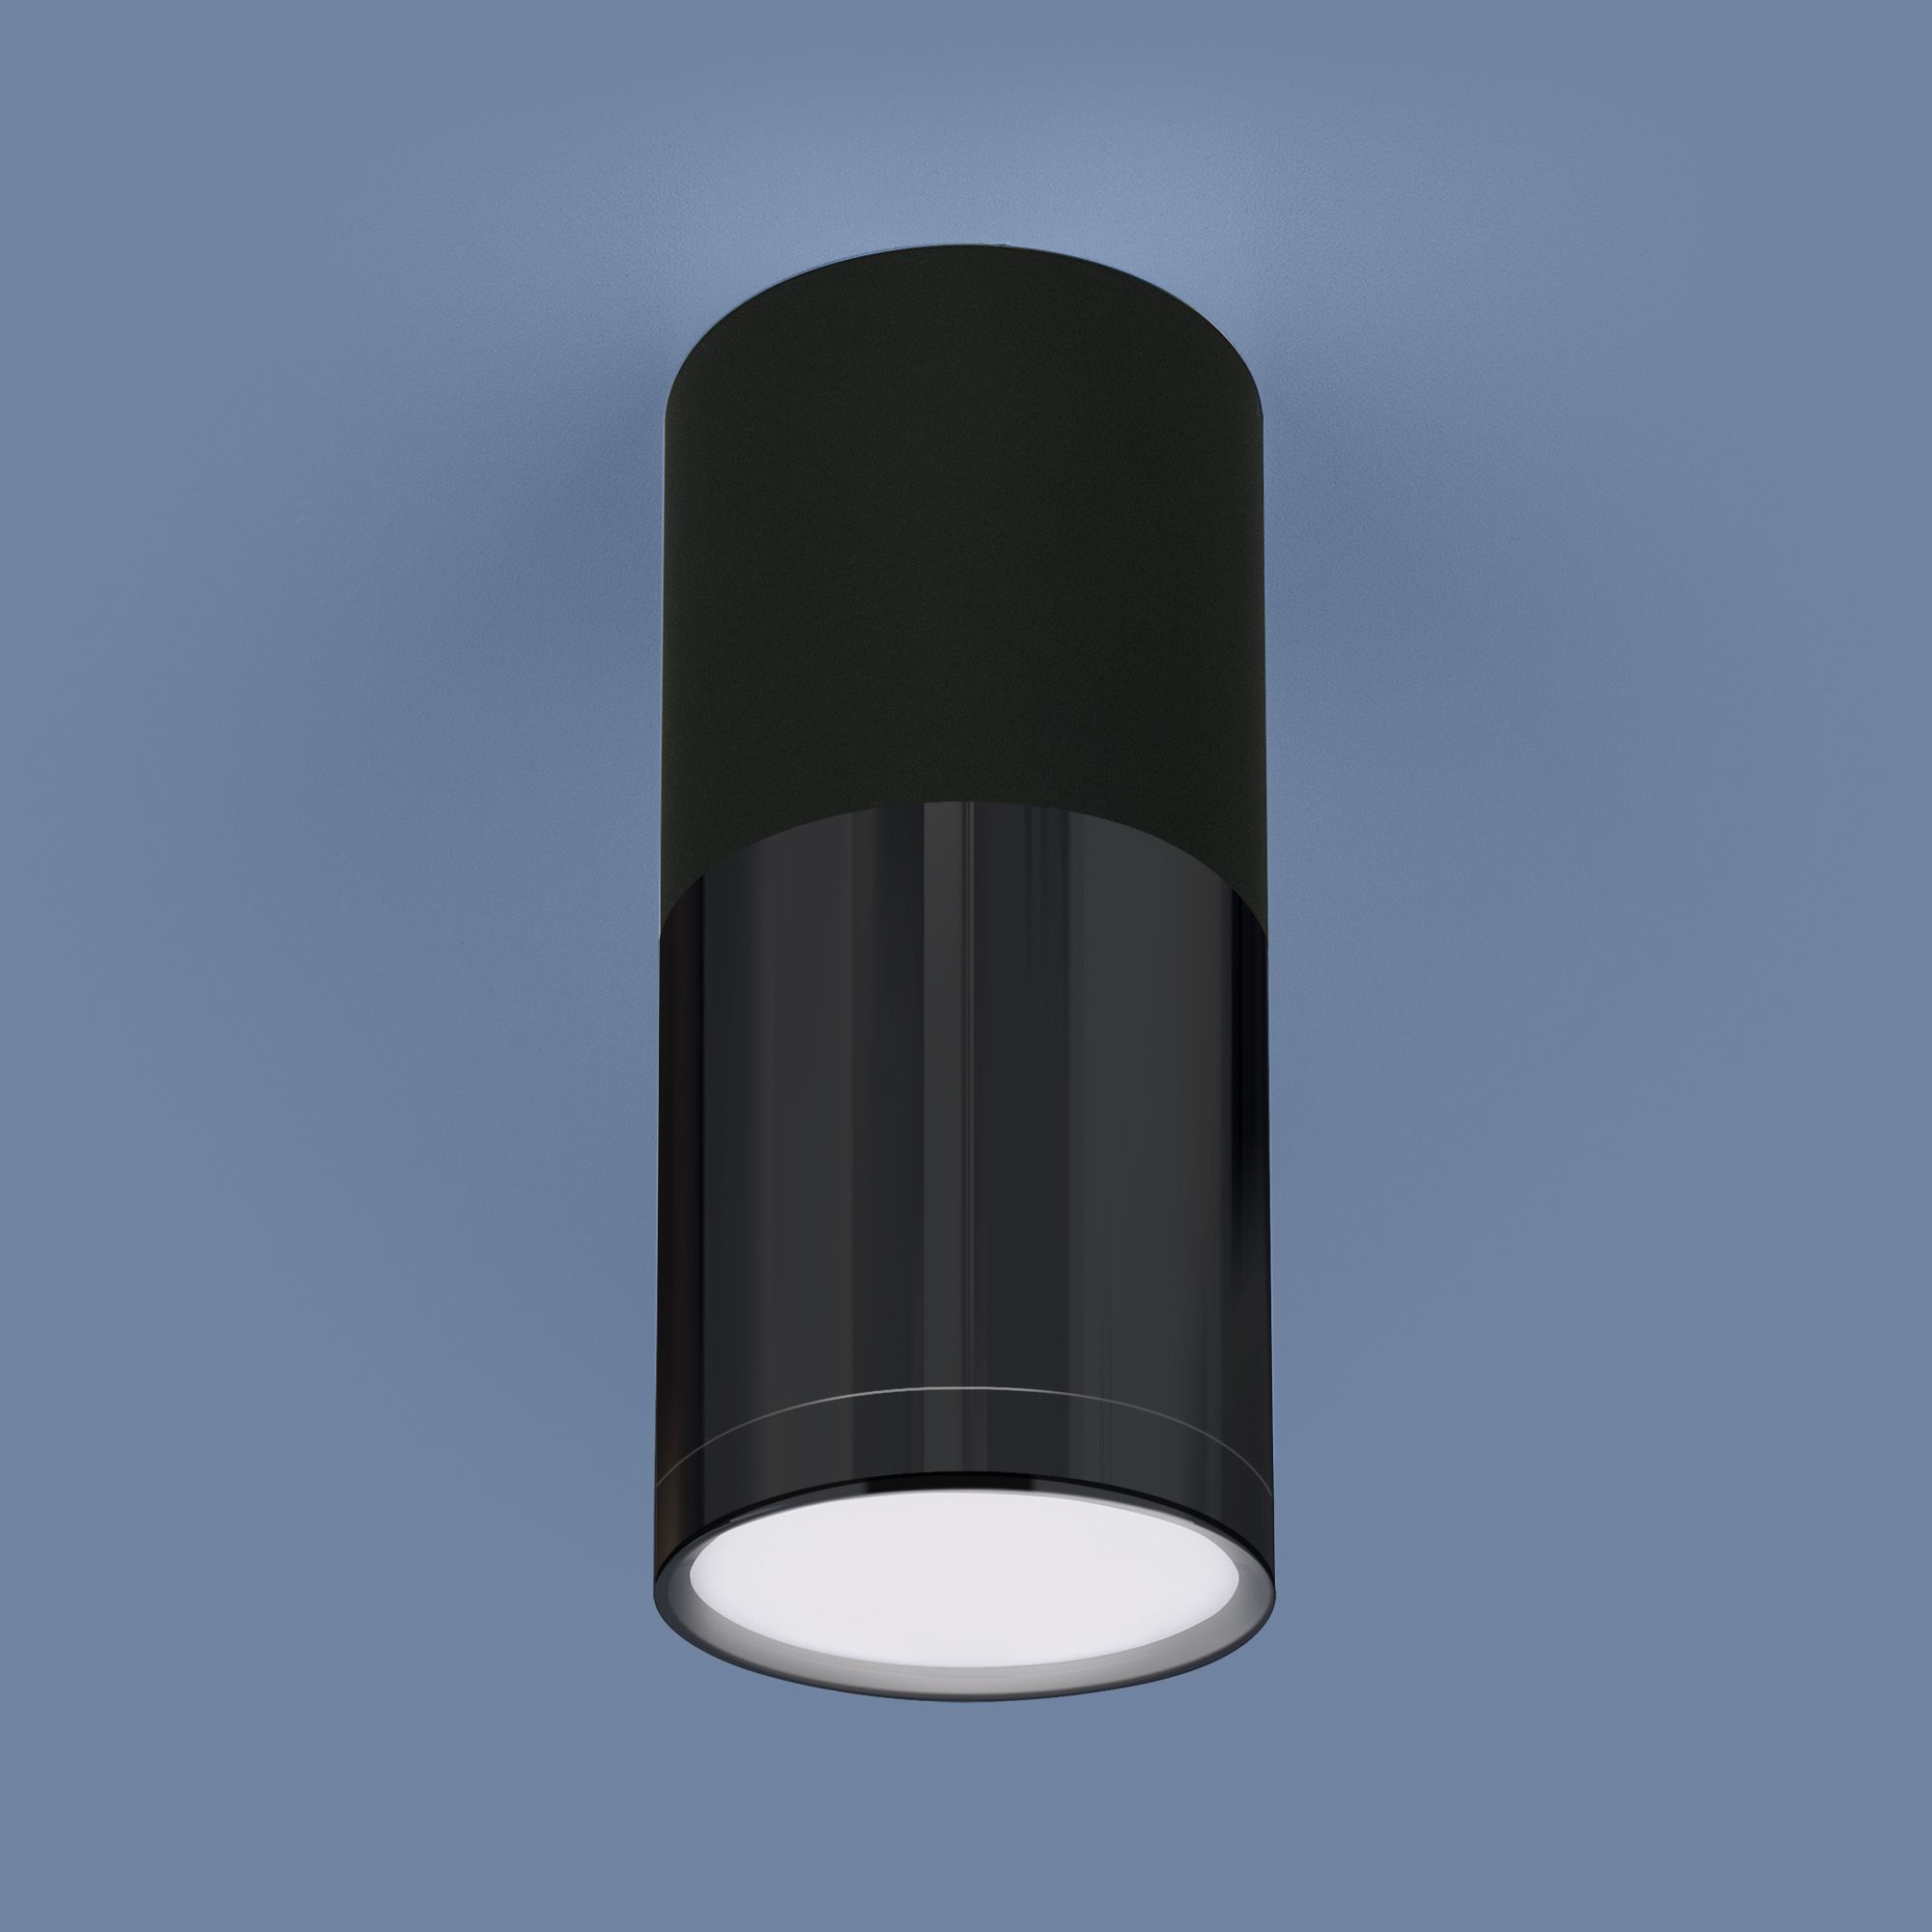 Накладной потолочный  светодиодный светильник DLR028 6W 4200K черный матовый/черный хром